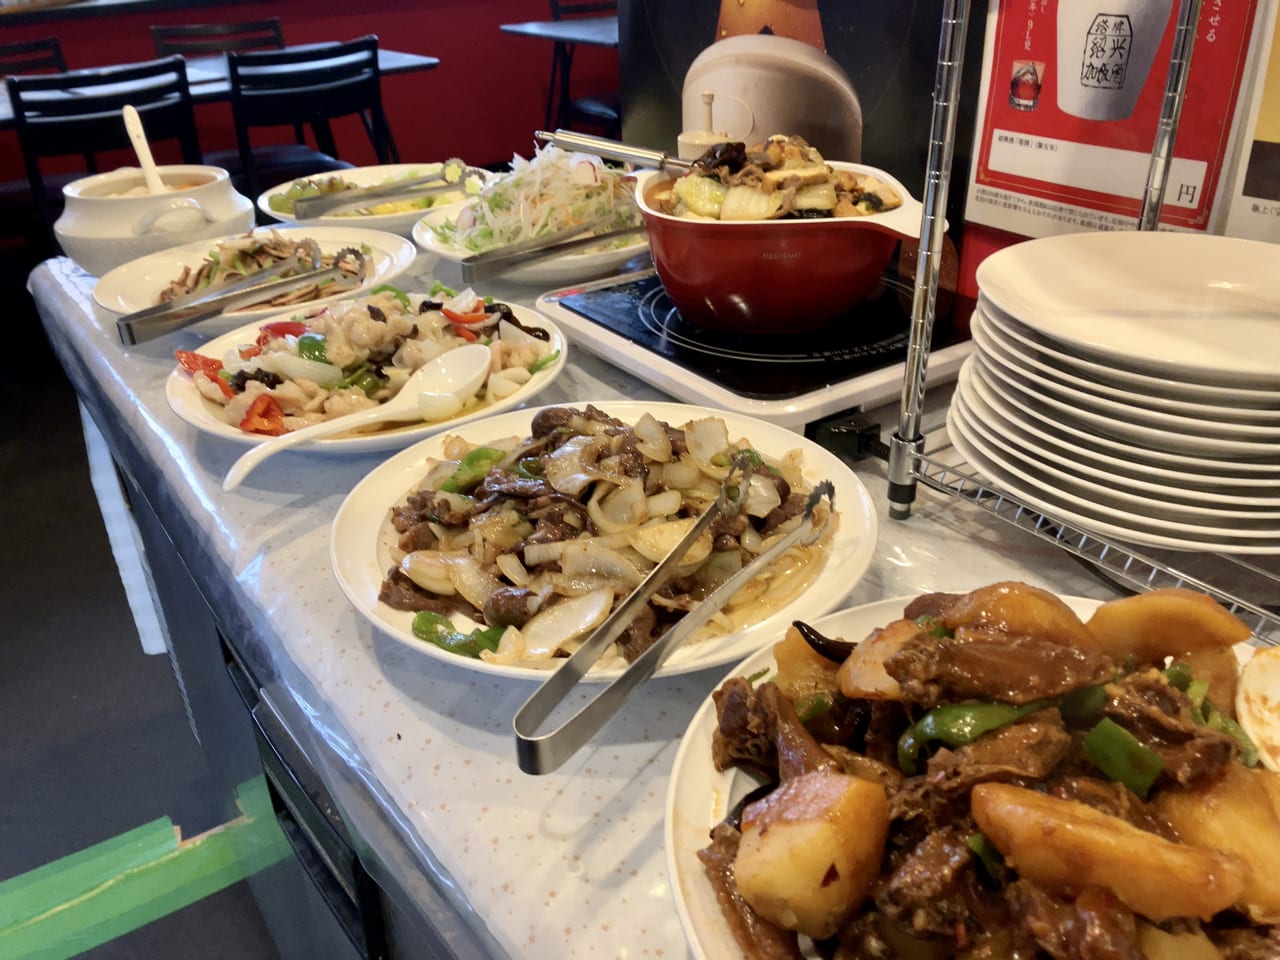 刀で削る麺と書いて「刀削麺」が楽しめる東区の名店「運城飯店」に行ってみた。